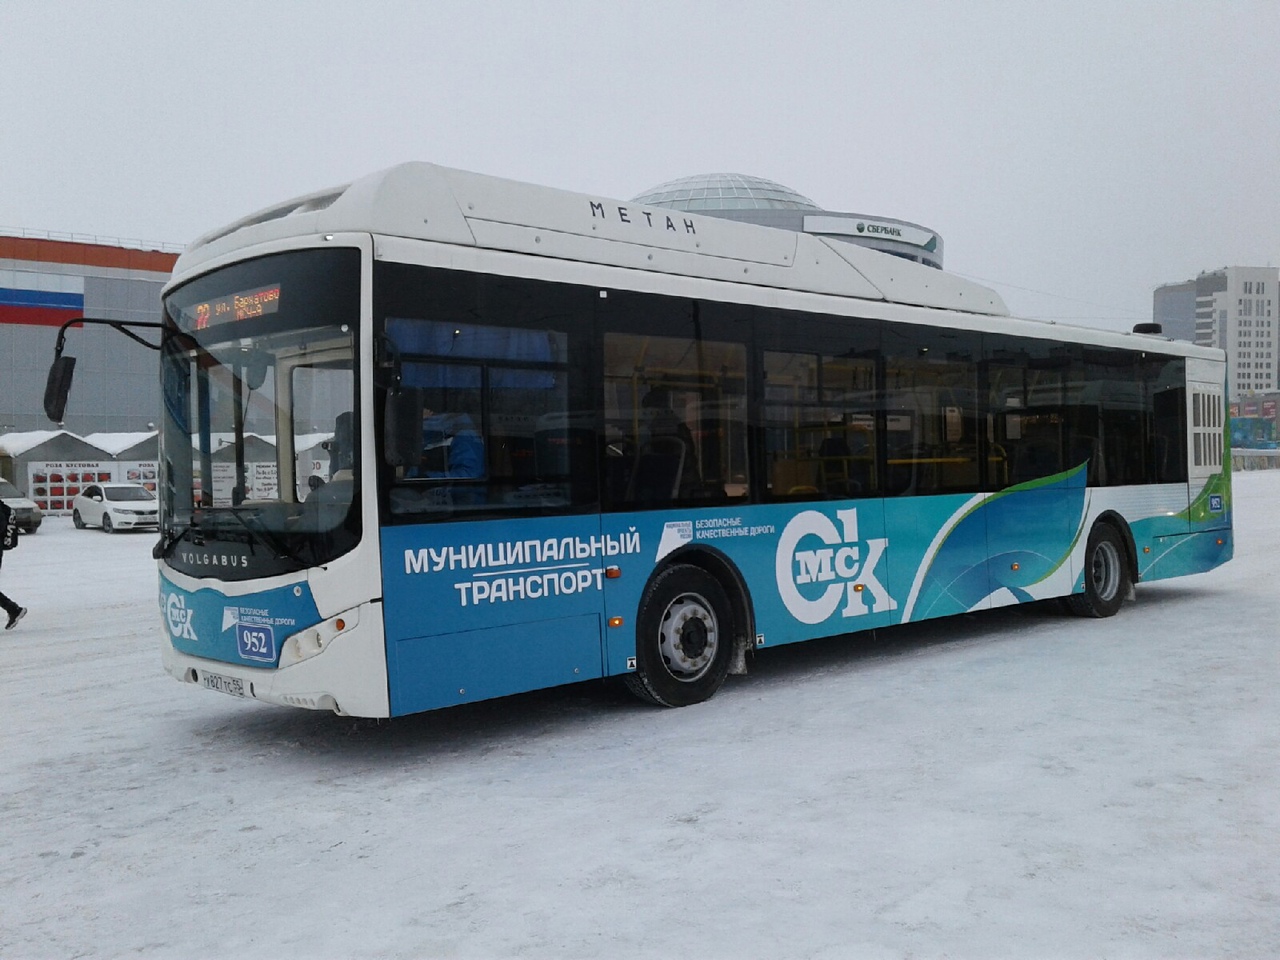 После Нового года омичам добавят автобусов #Омск #Общество #Сегодня